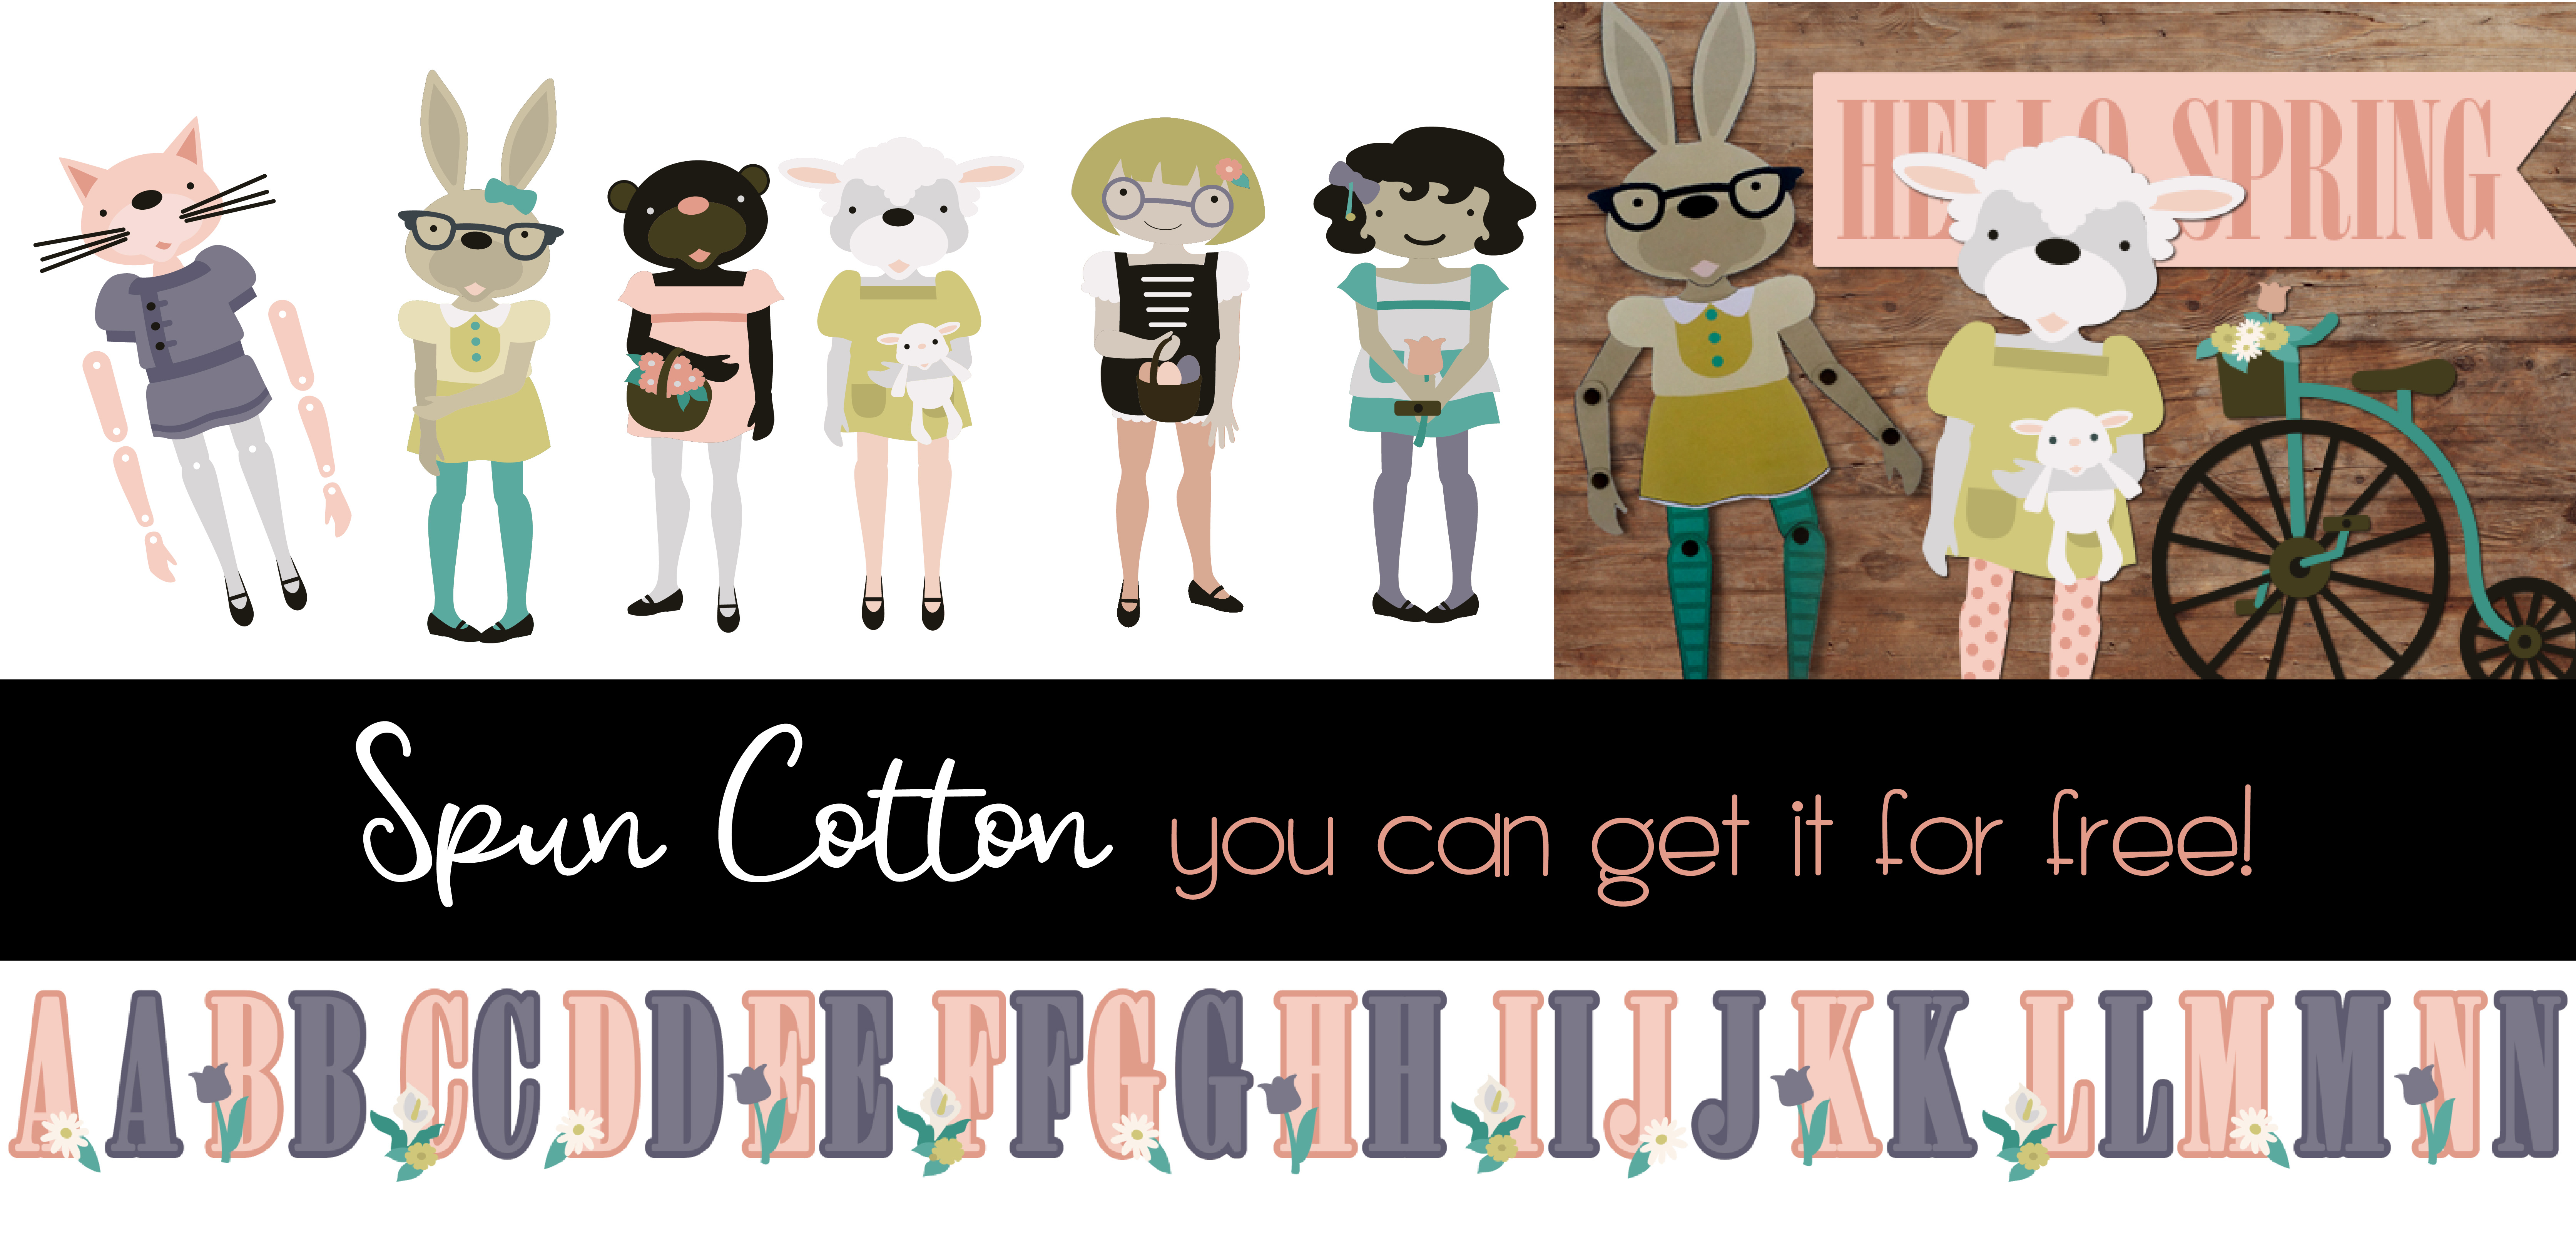 Earn the Spun Cotton - Promotional Bundle - Free